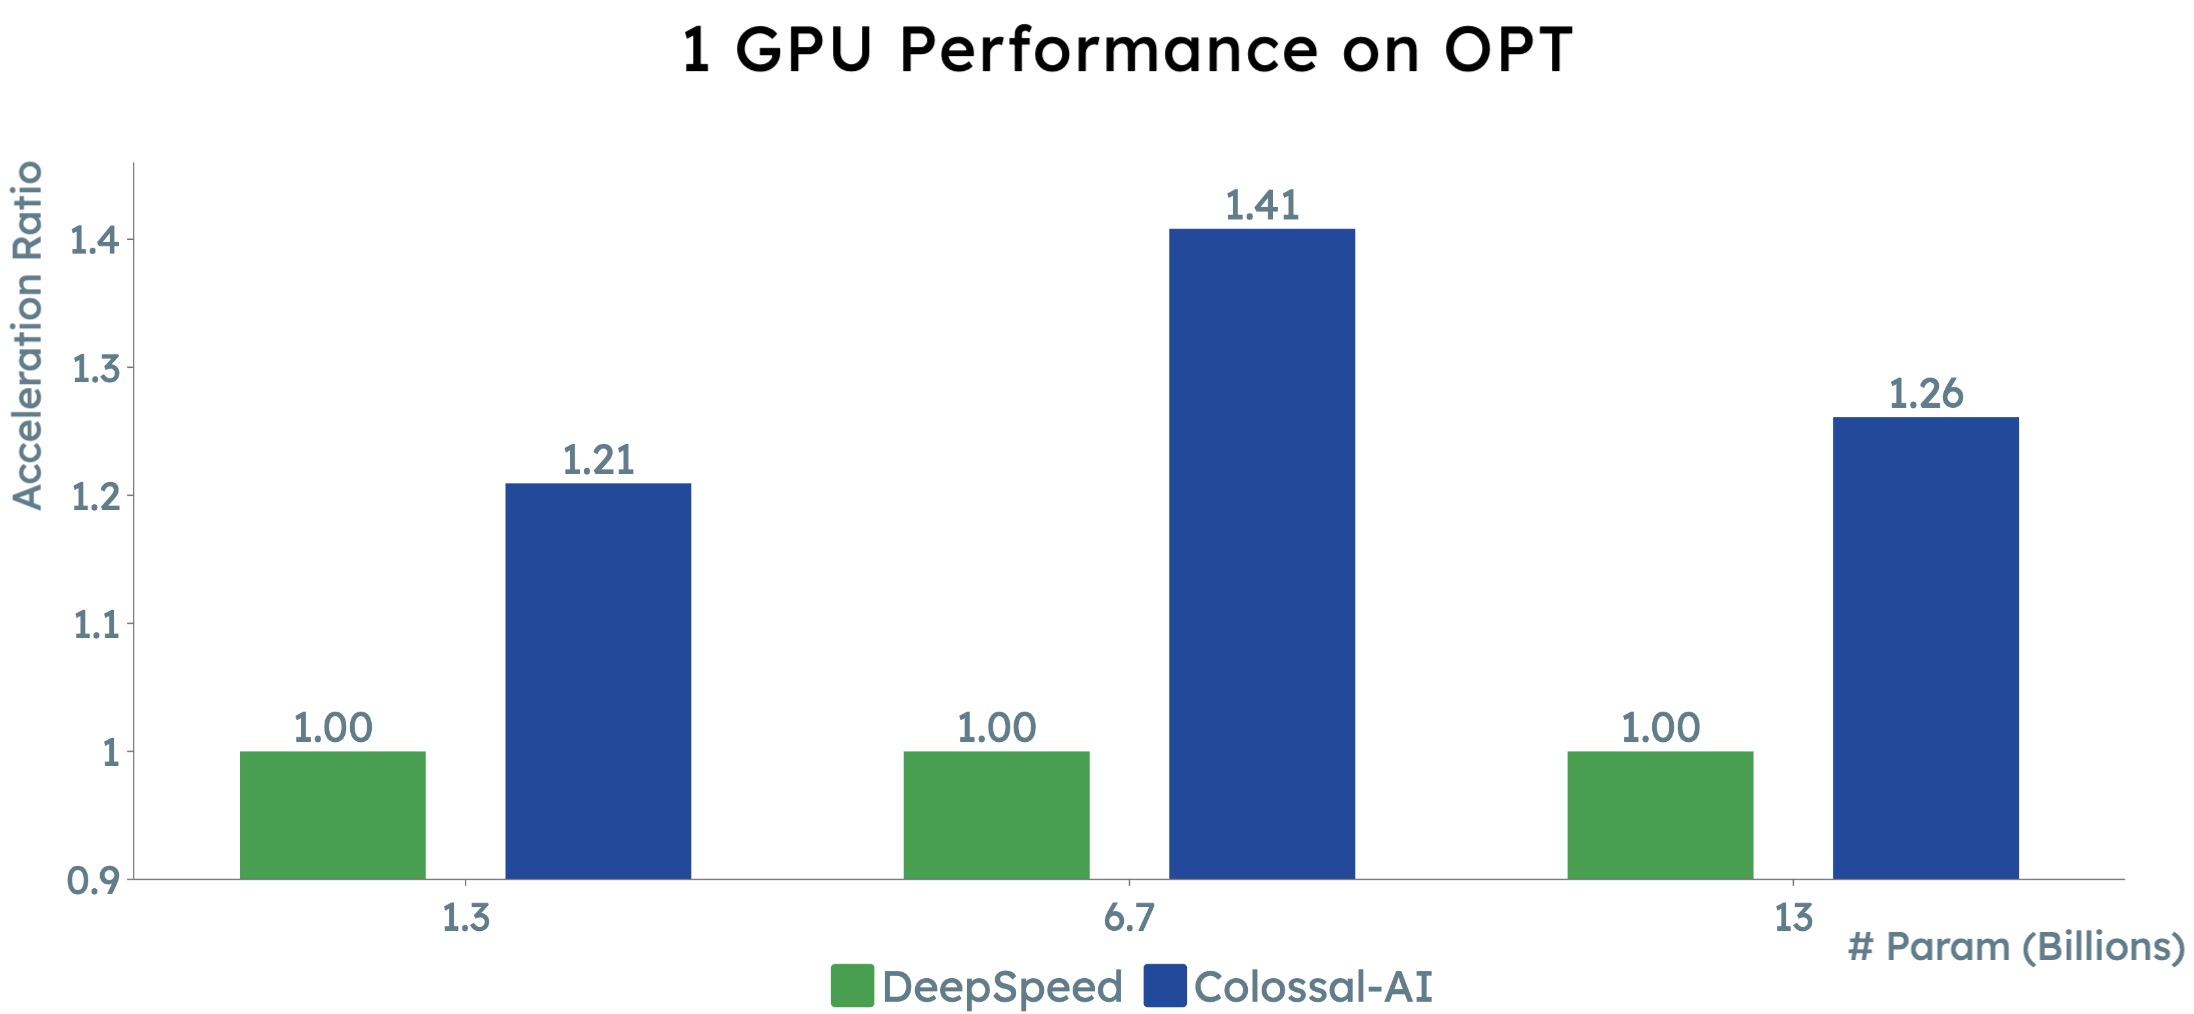 1 GPU Performance on OPT 01